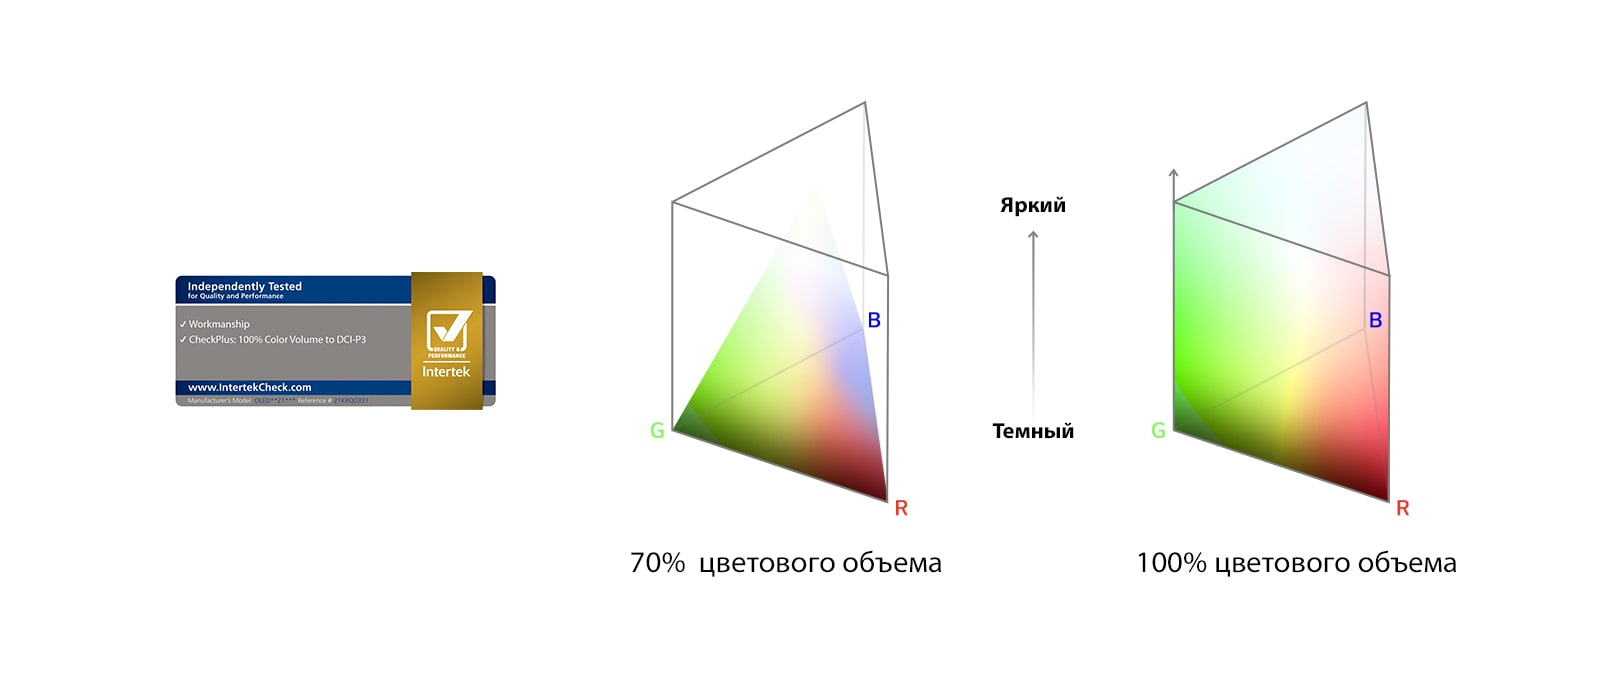 Логотип 100% цветового объема, сертифицированный Intertek. График сравнения 70% цветового объема и 100% цветового объема.